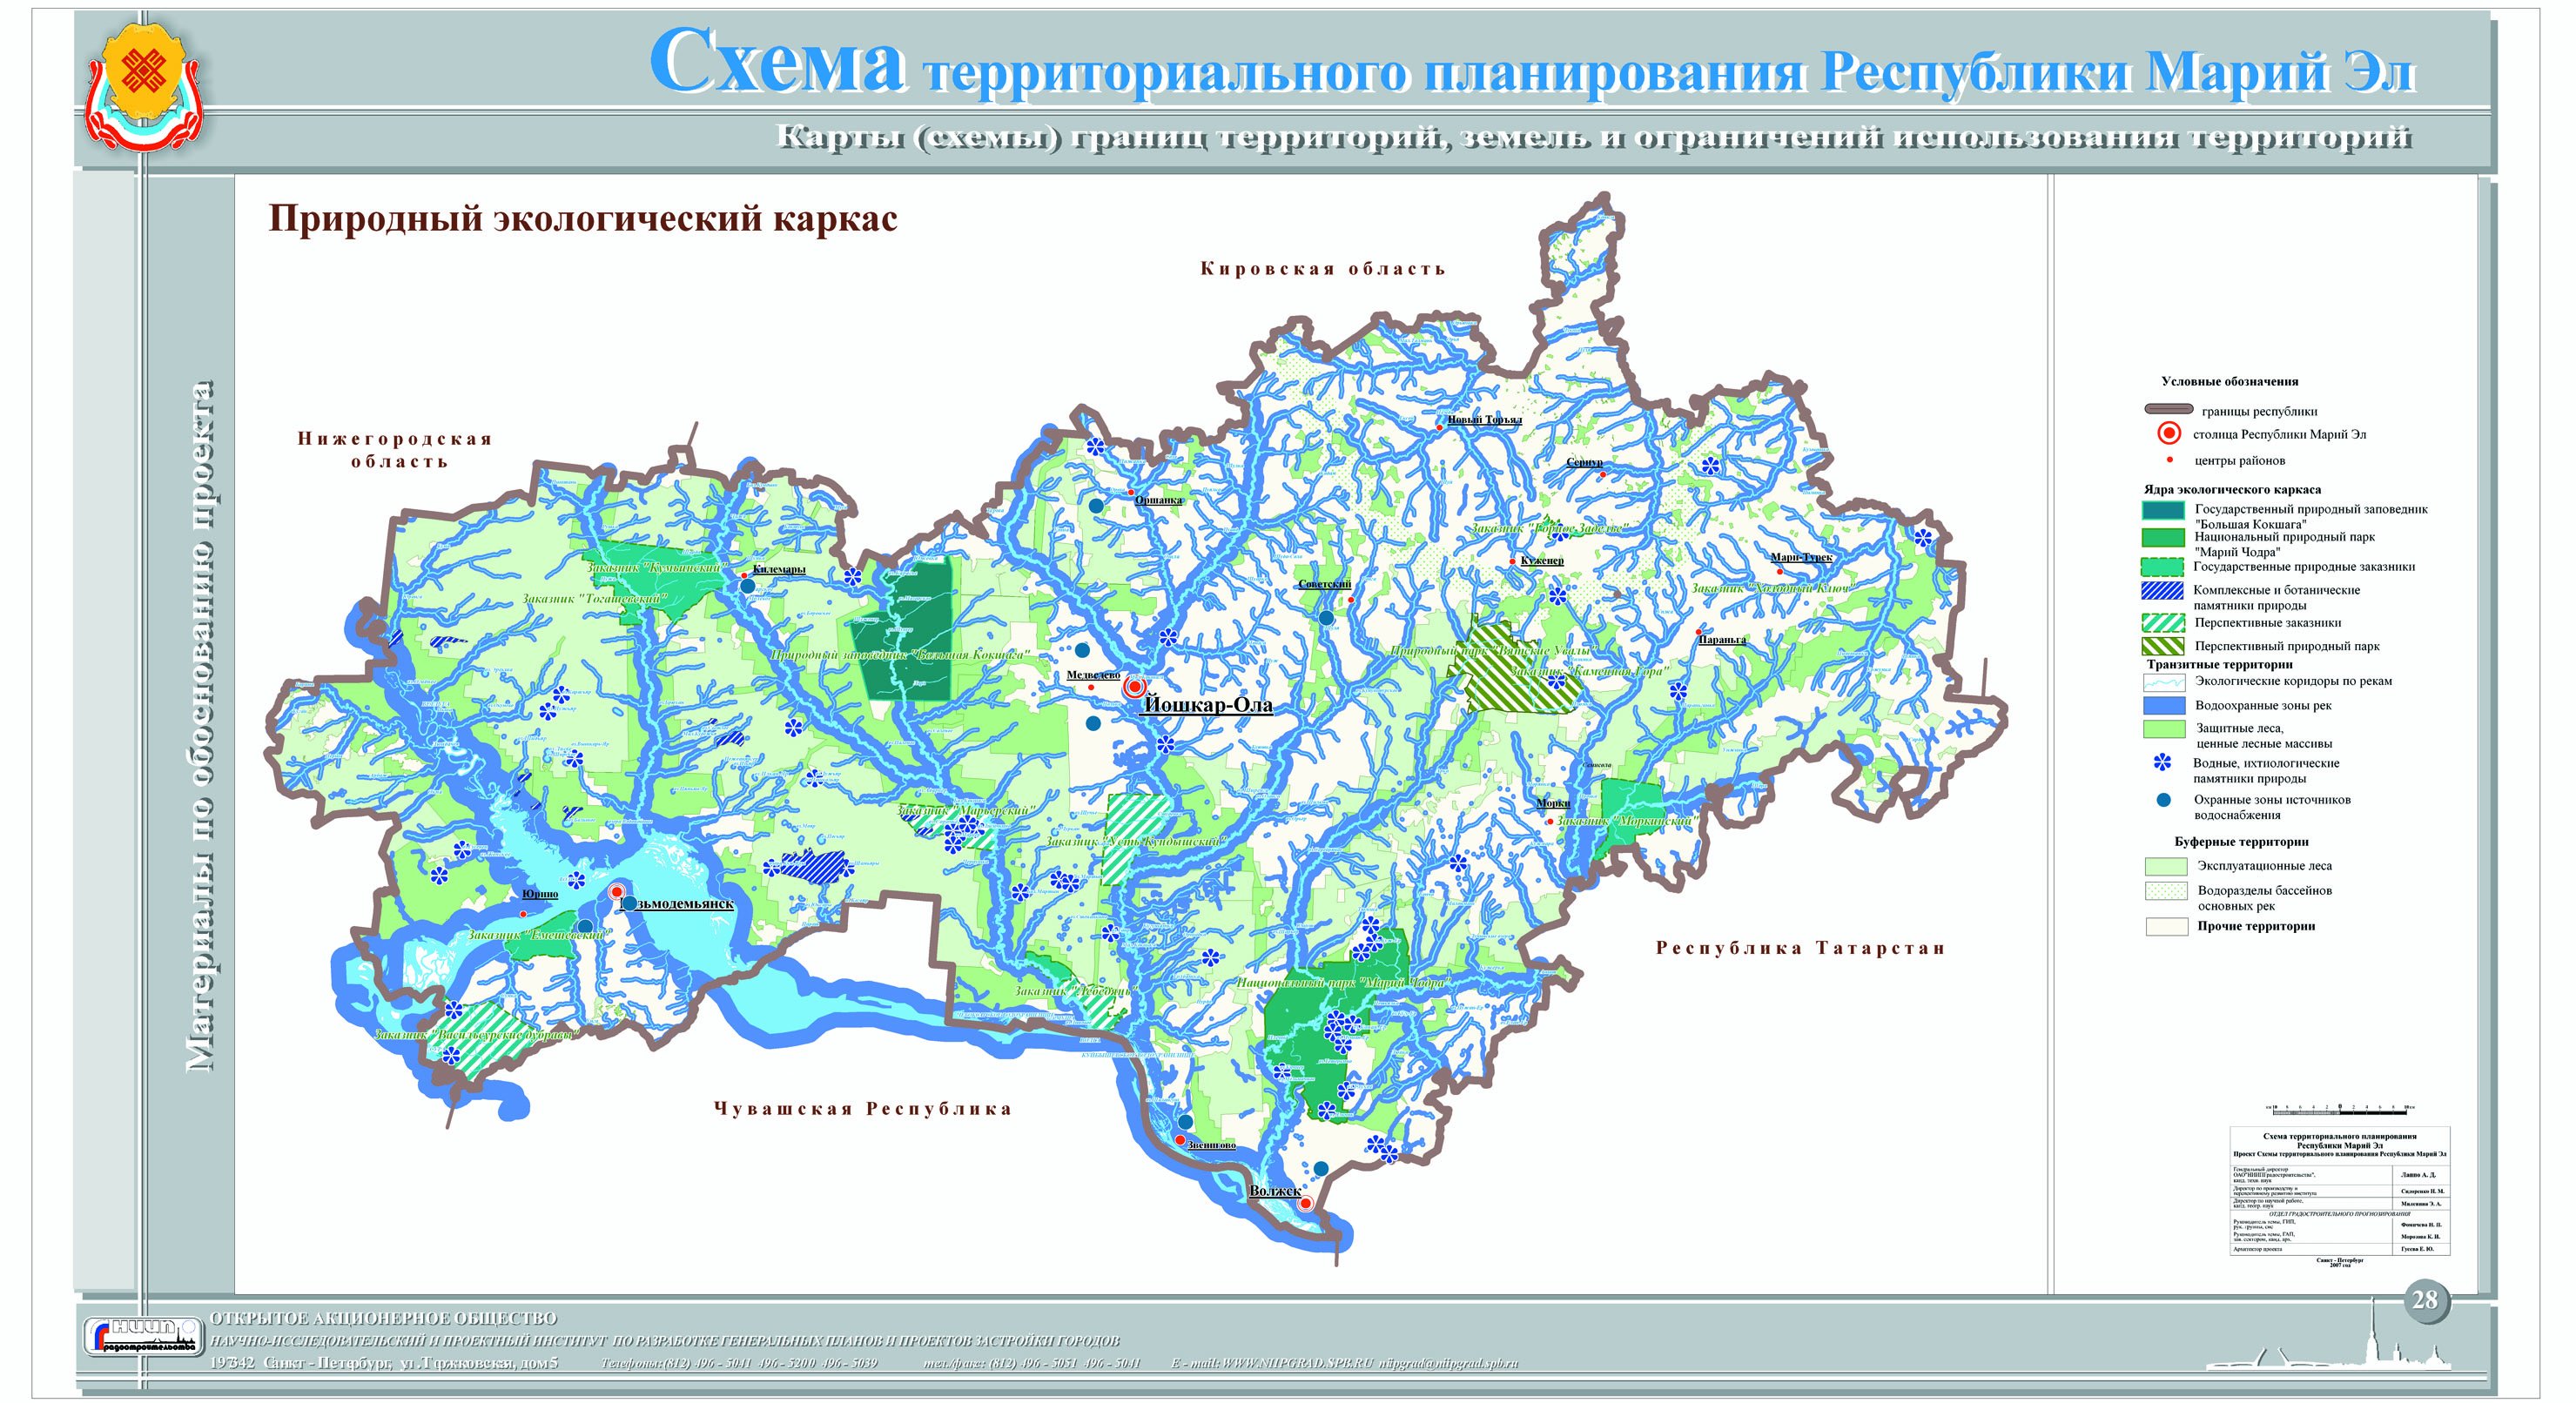 Экологический каркас Республики Мордовия